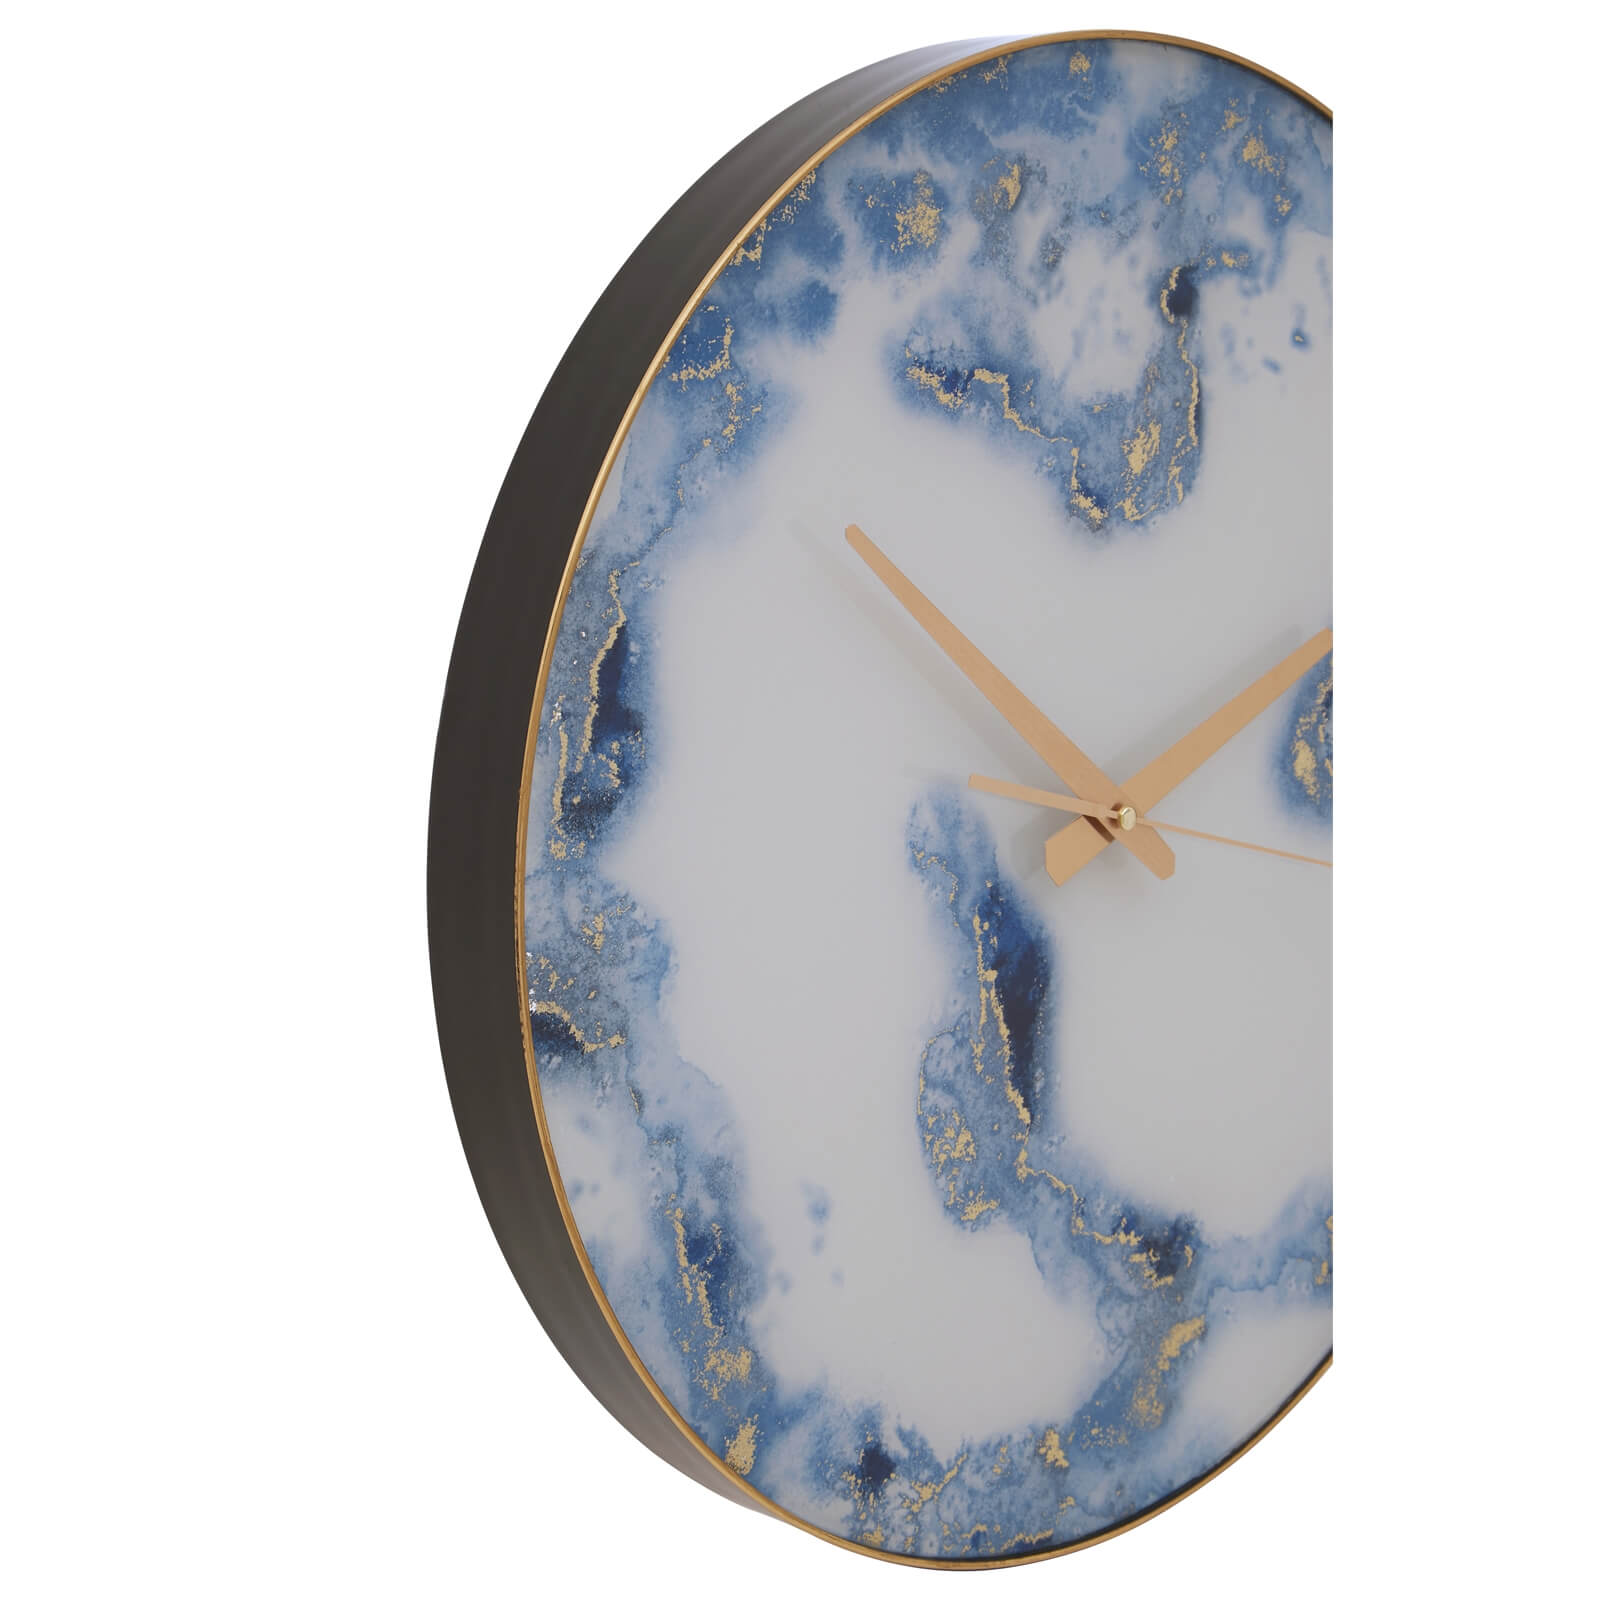 Celina Wall Clock - Blue Abstract